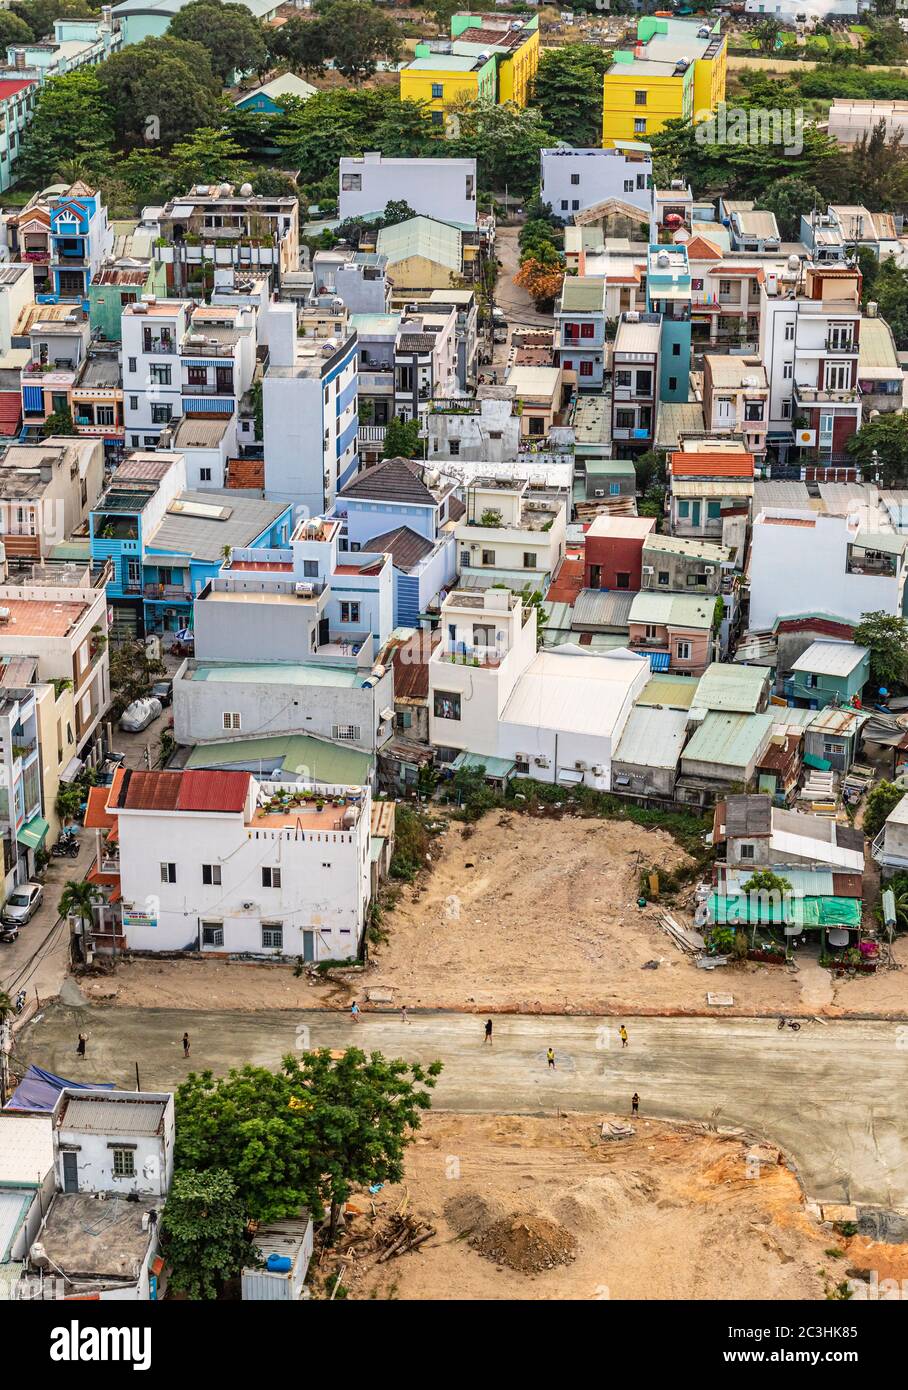 Vue aérienne des habitations urbaines de la ville côtière de Da Nang, Vietnam. Les enfants et les parents peuvent être vus jouer dans les rues. Banque D'Images